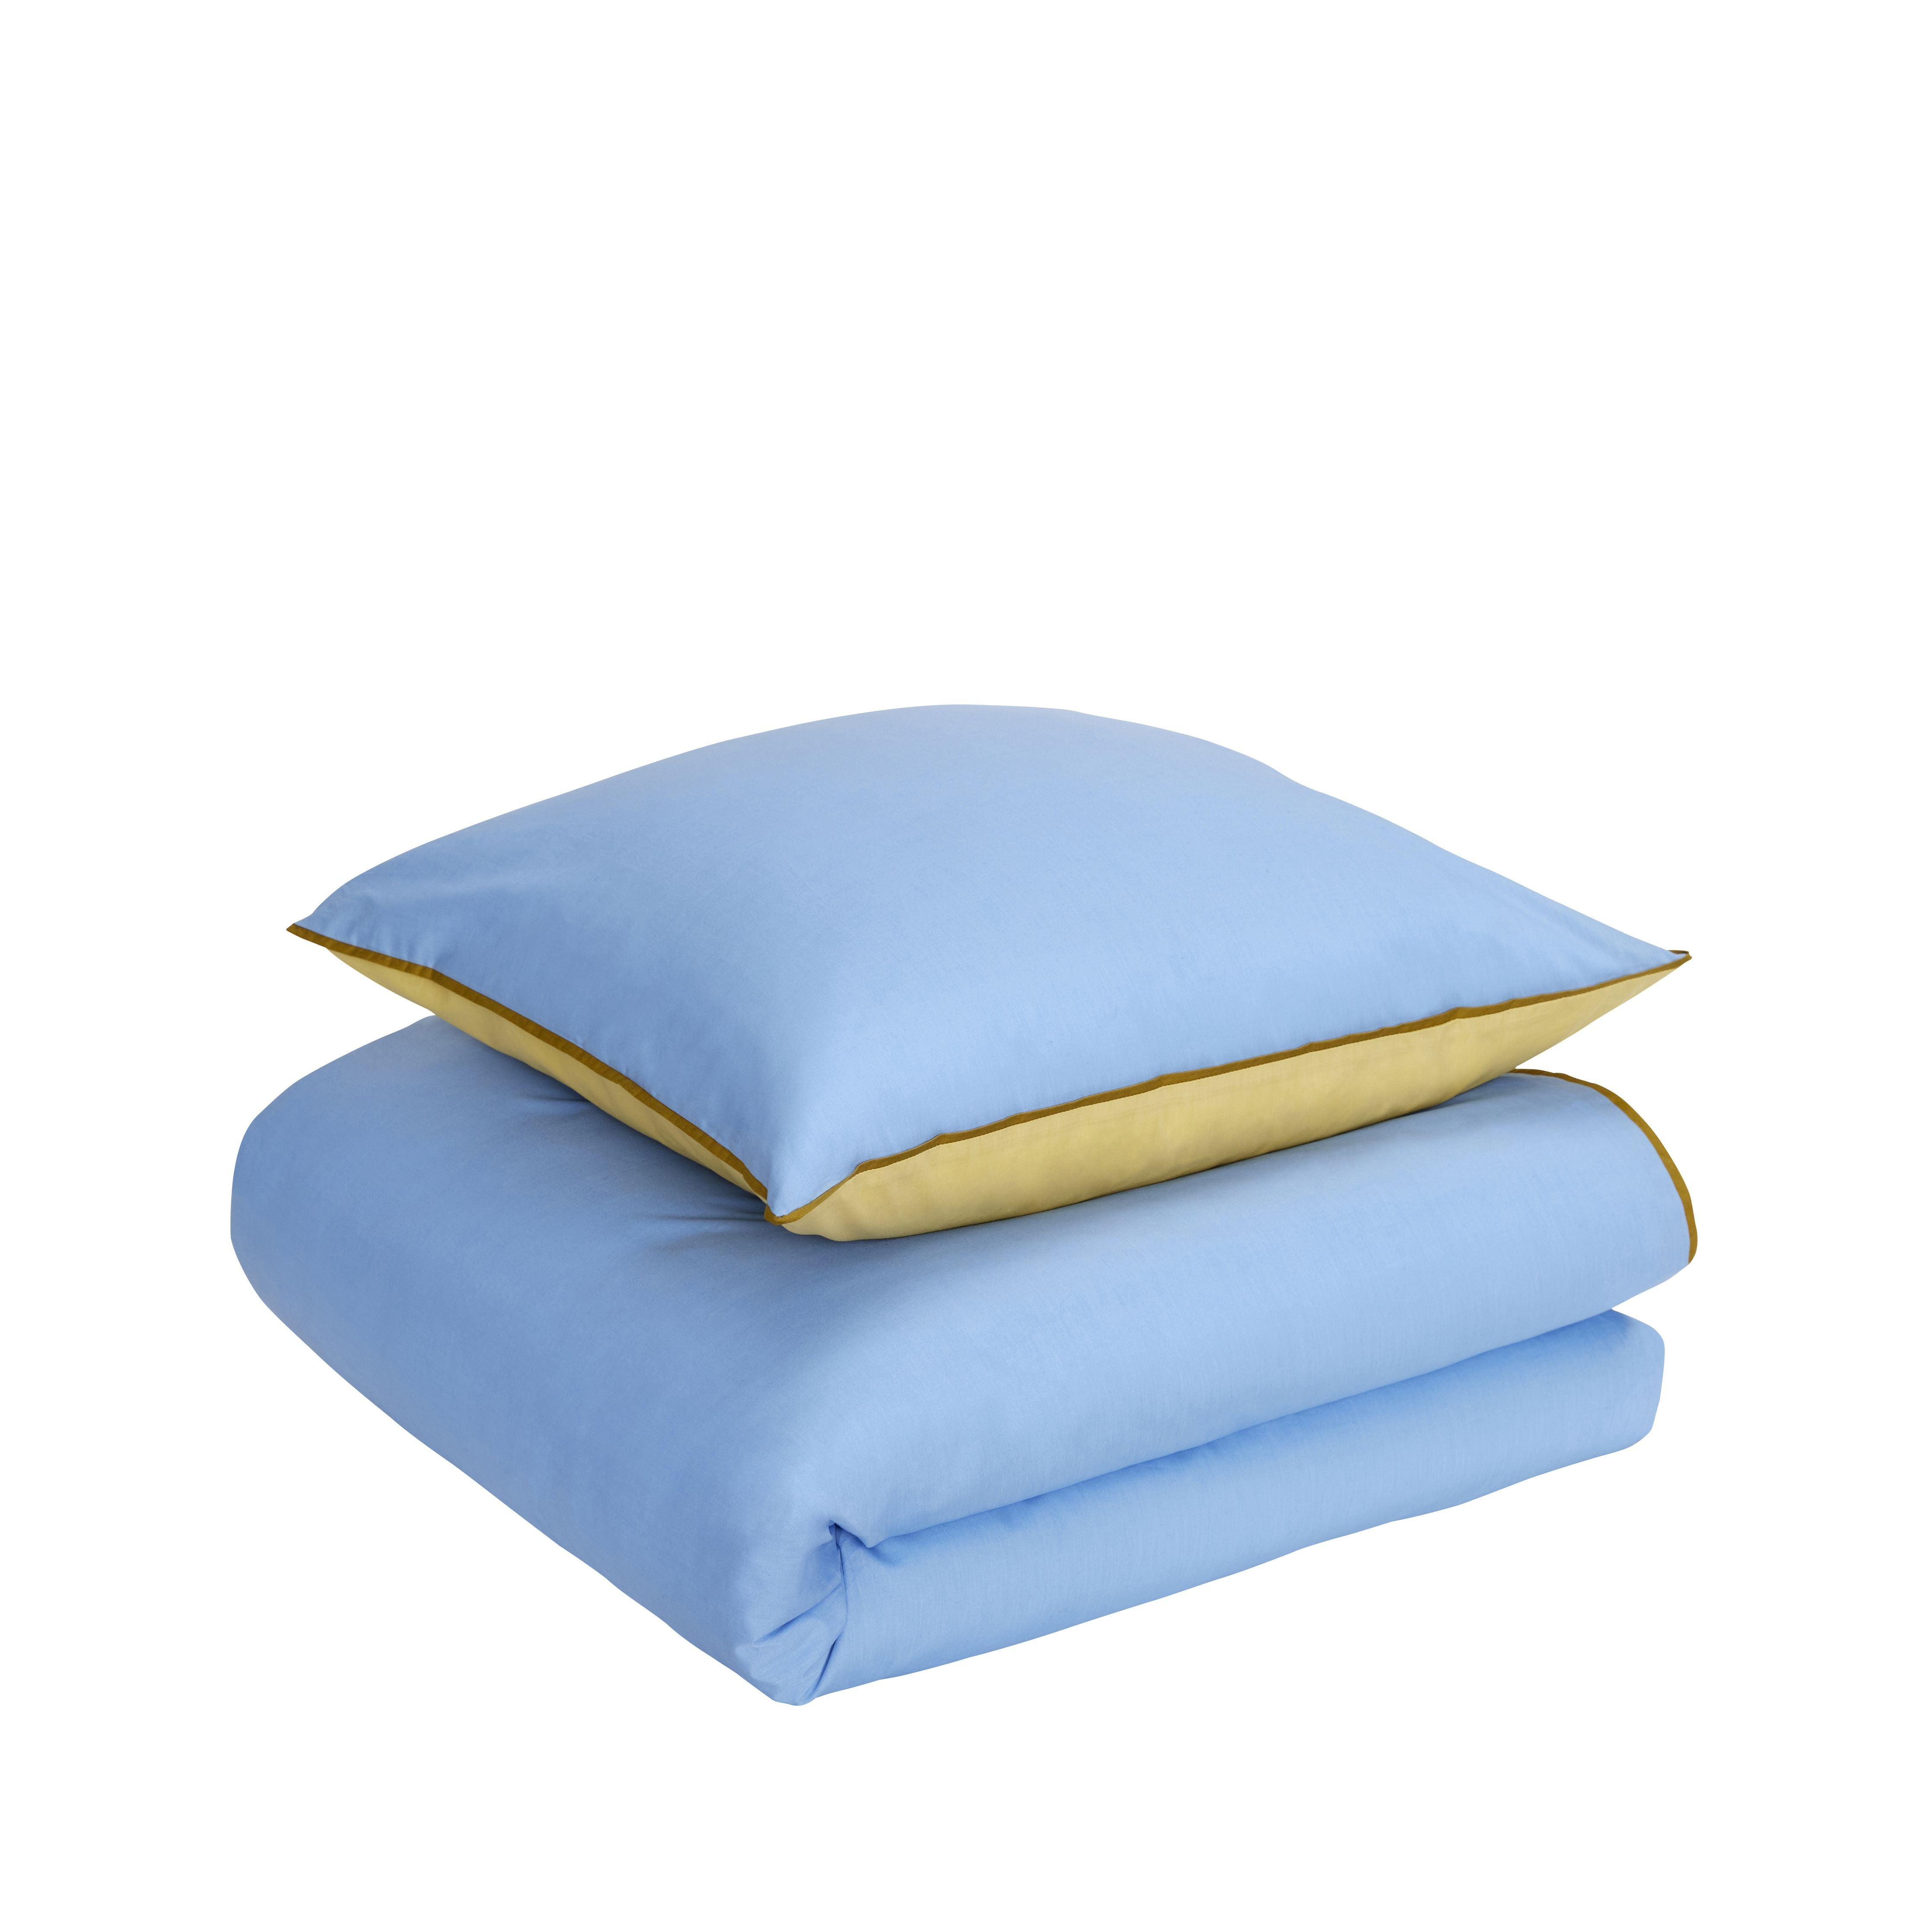 Hübsch Aki Bed Linen 60/200, Blue/Yellow